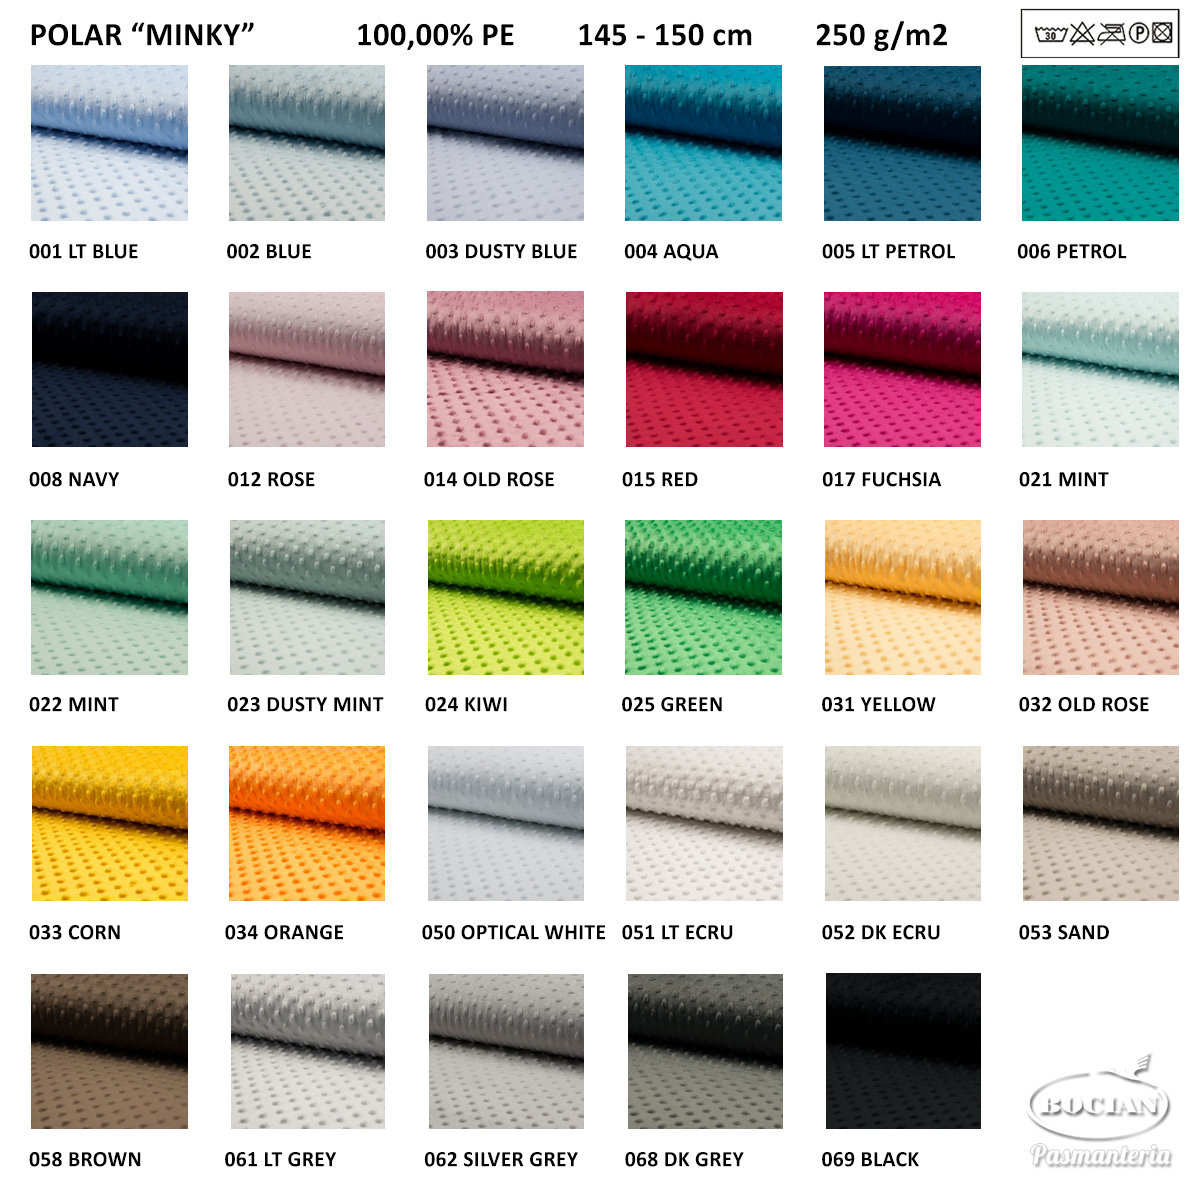 Polar Minky / tkanina Minki - wzornik kolorów